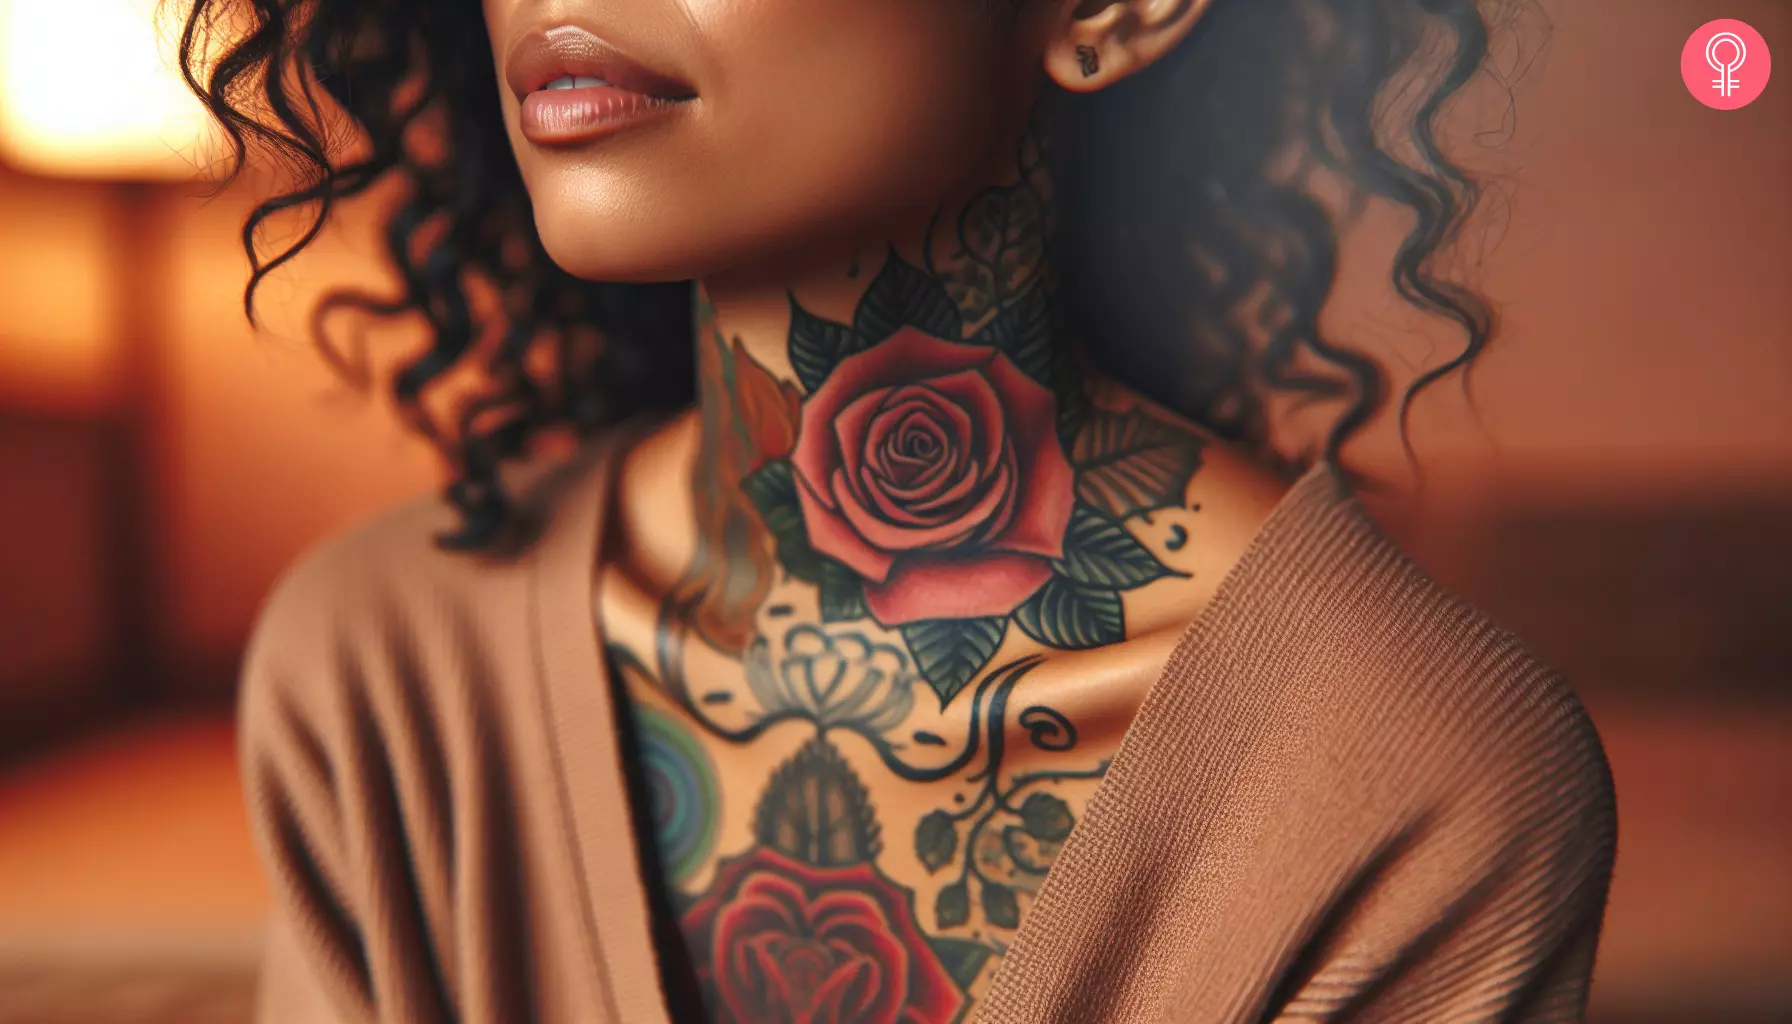 A rose neck tattoo